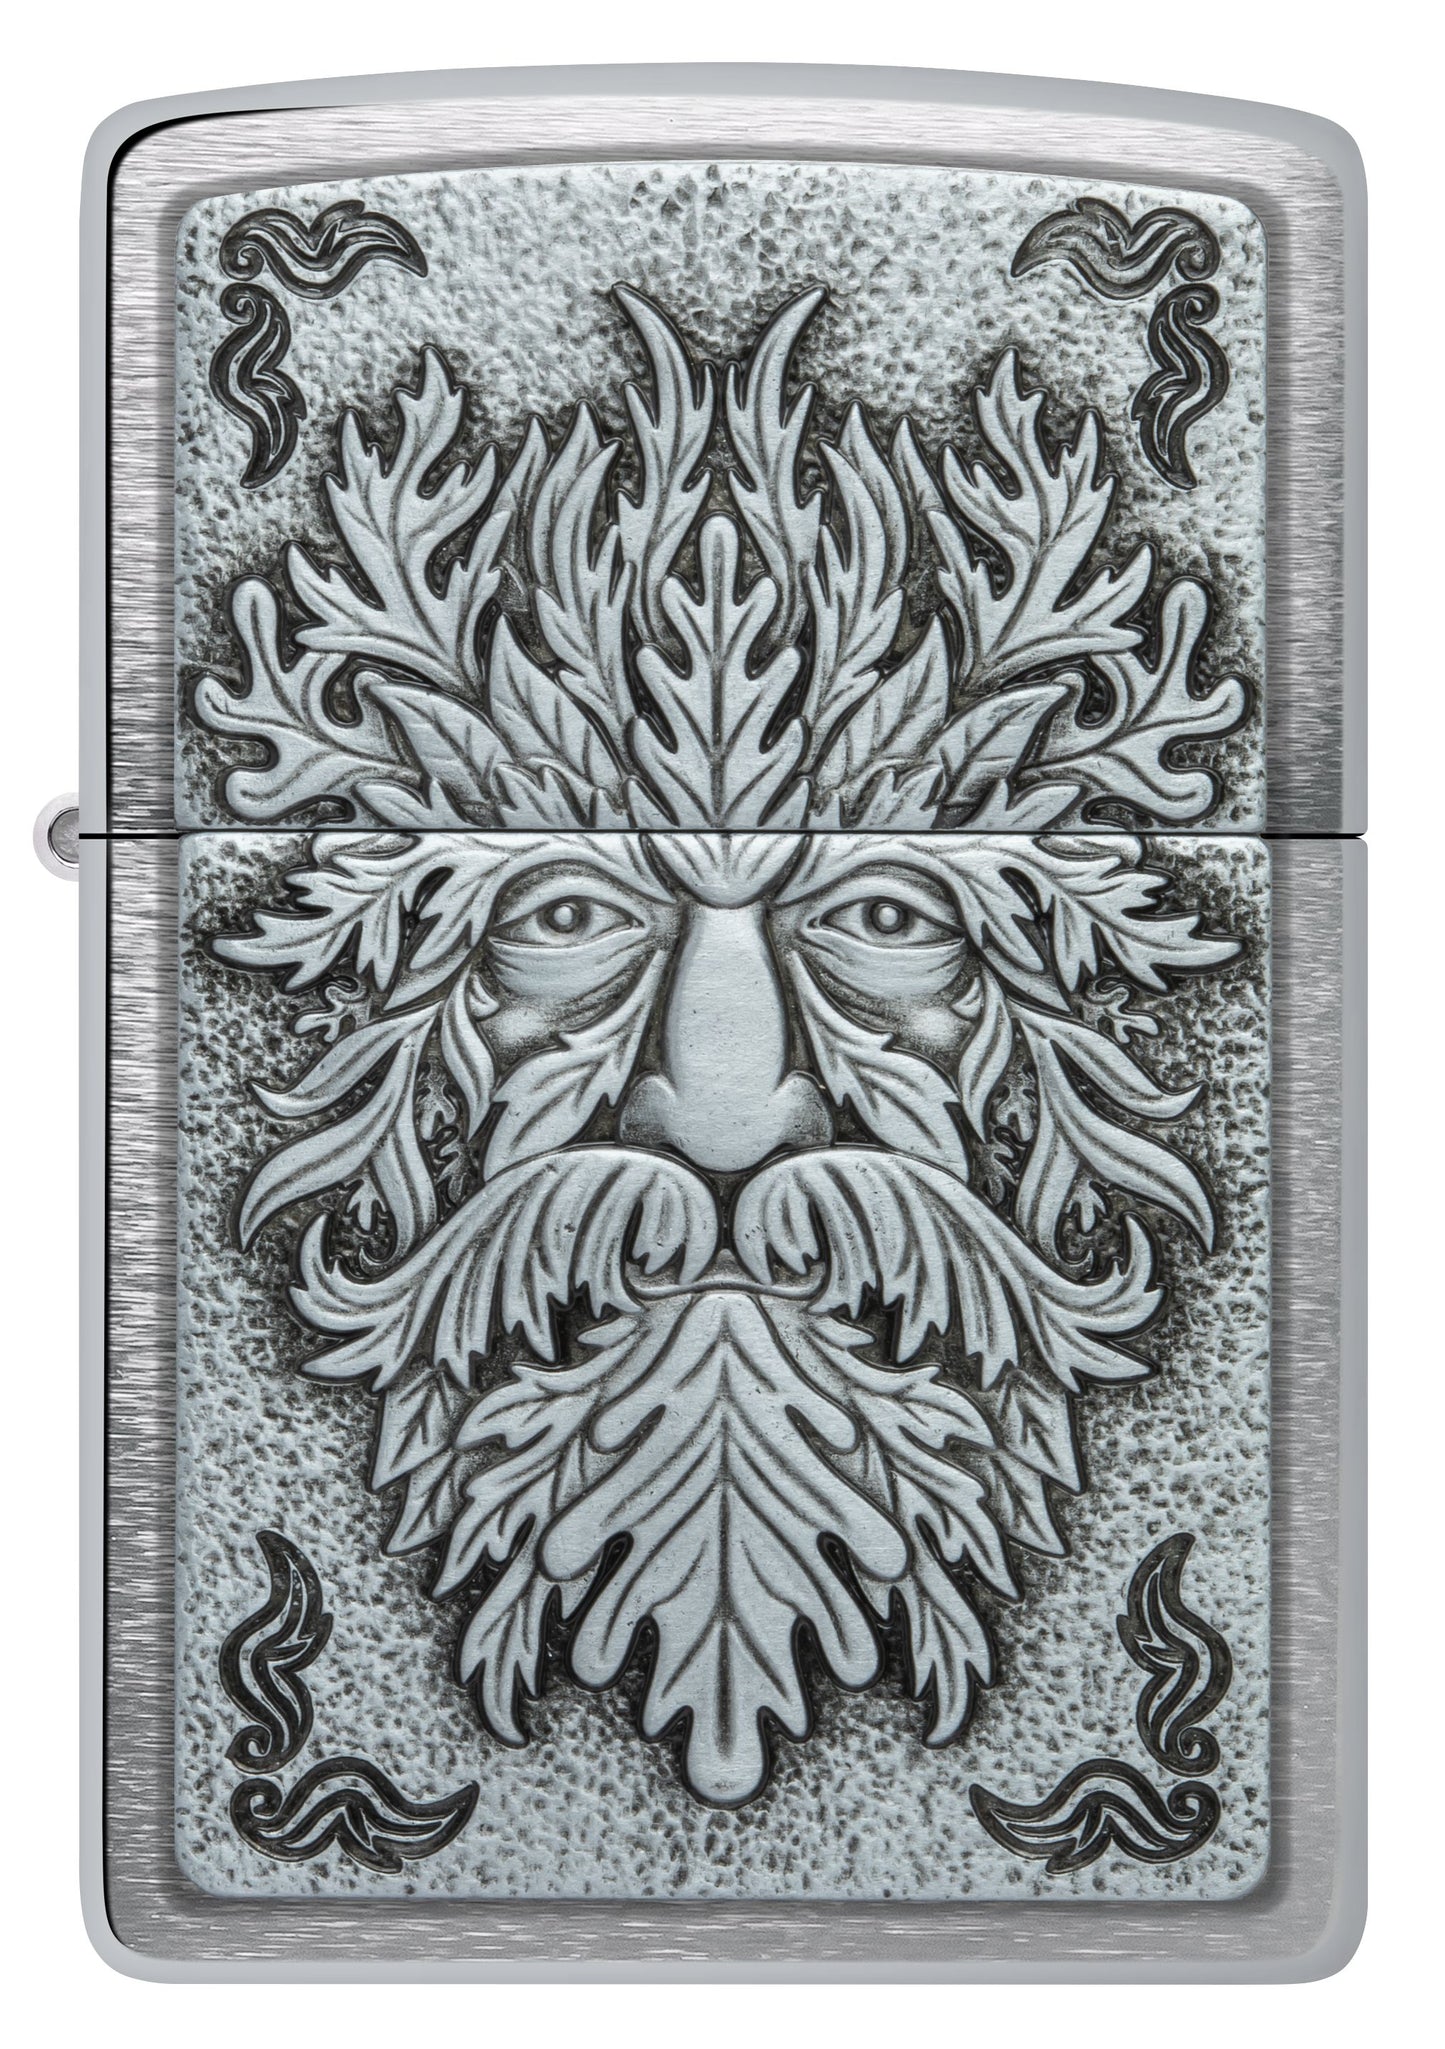 Zippo Norse God Design, Brushed Chrome Emblem Lighter #48906